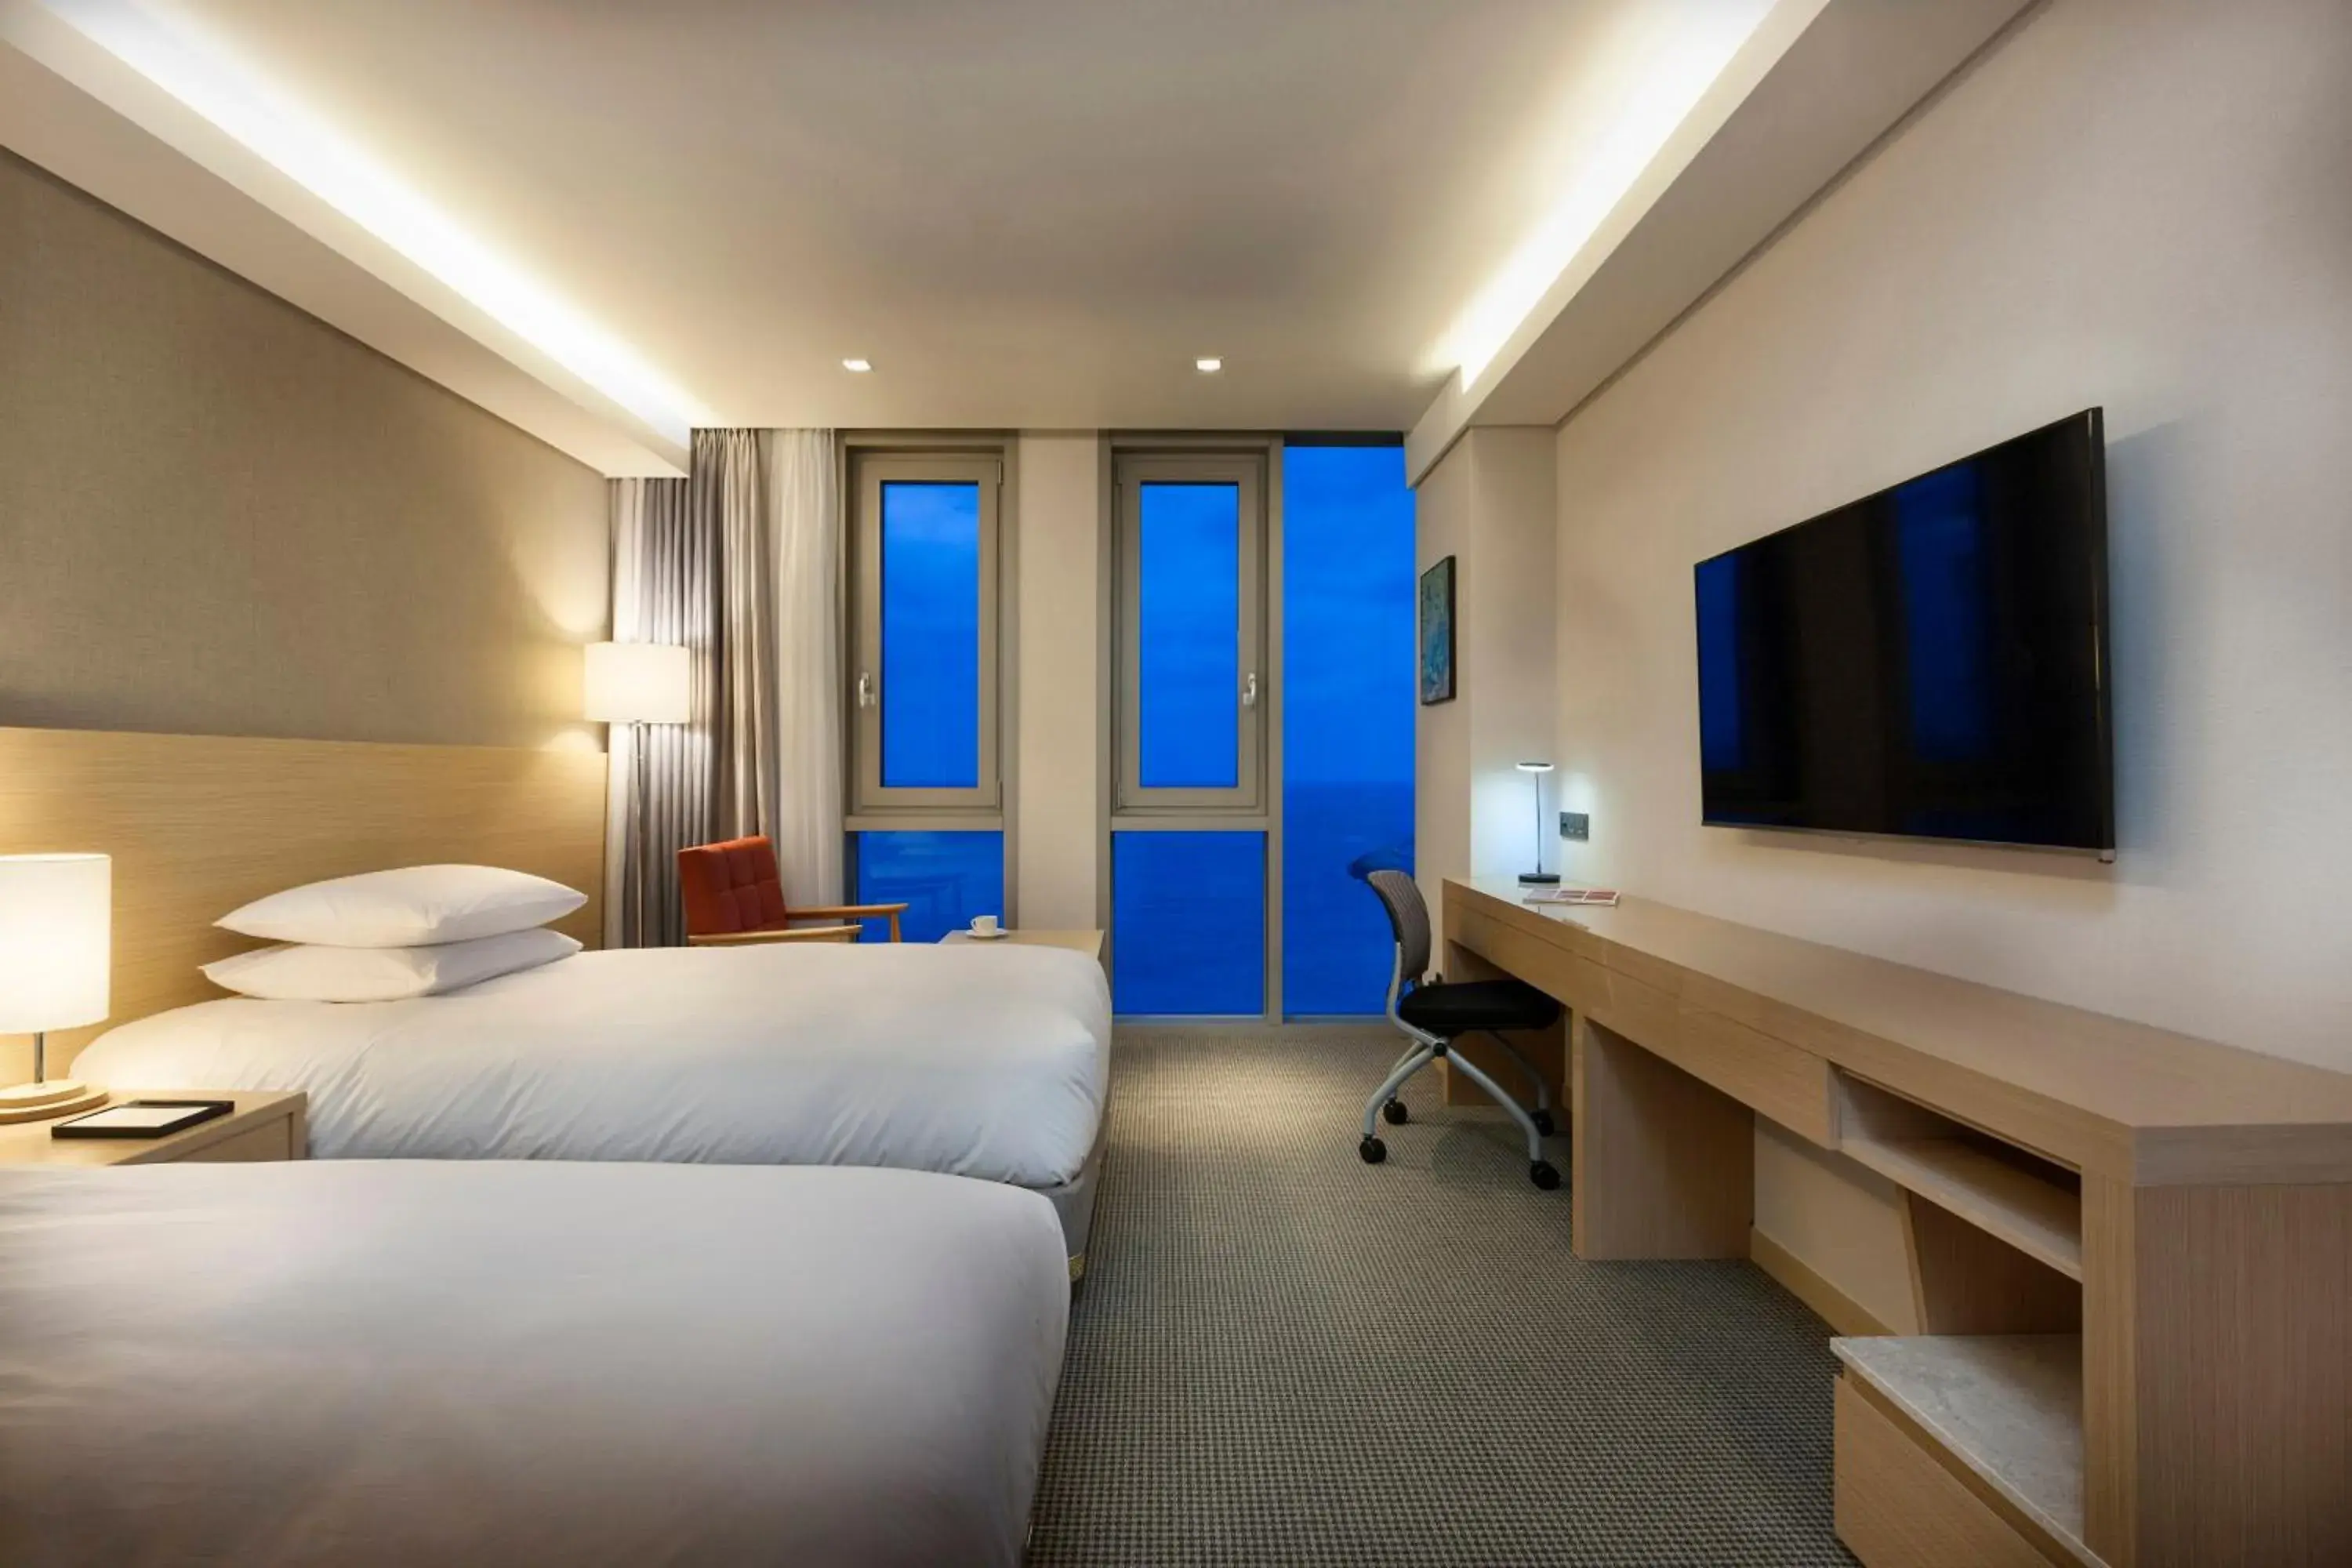 Bedroom in Hotel Regentmarine The Blue